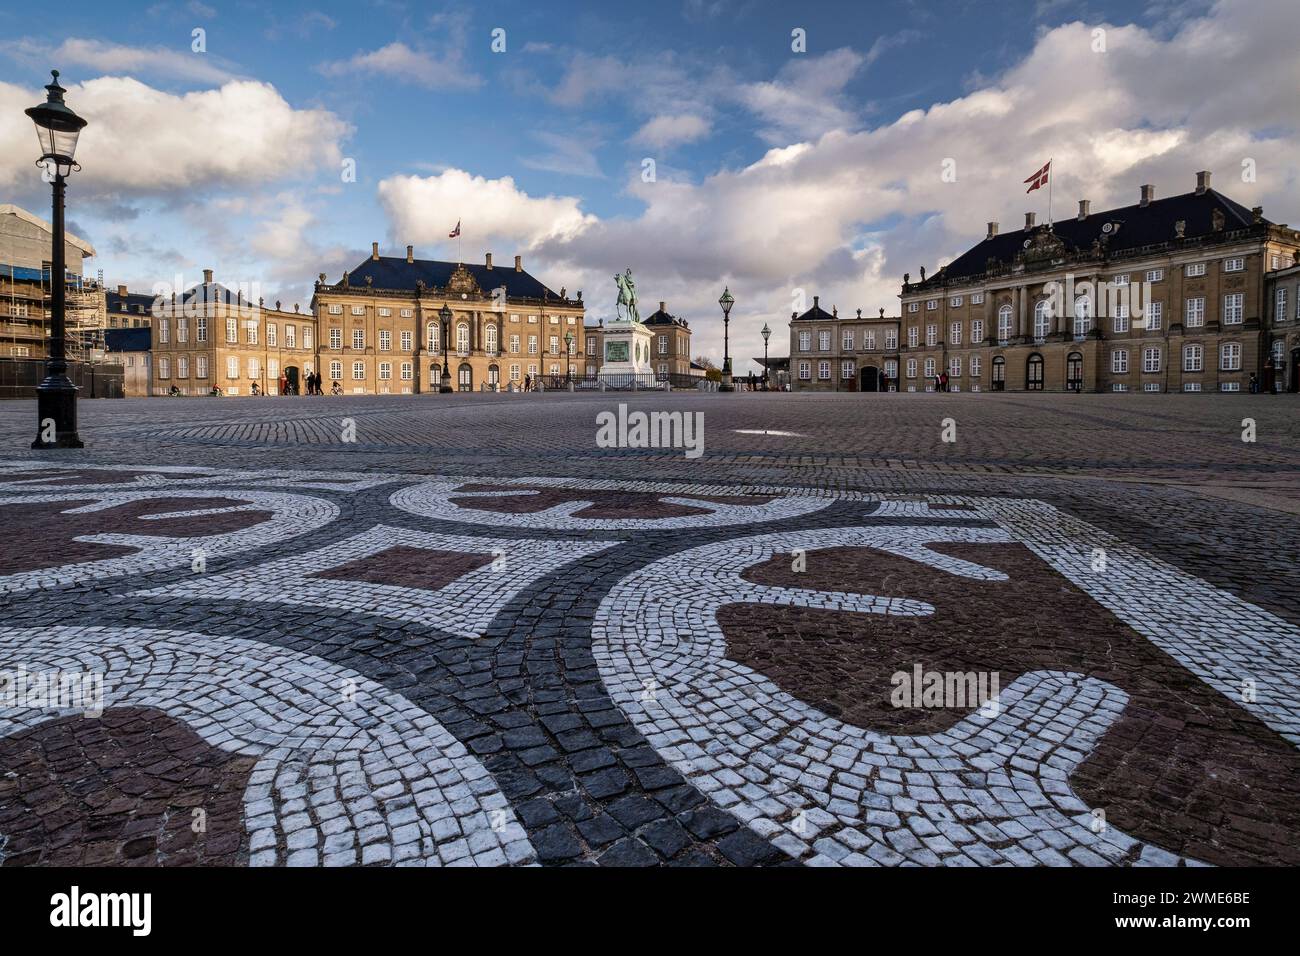 Mosaic Detail at The Amalienborg Palace, Copenhagen, Denmark, Europe Stock Photo